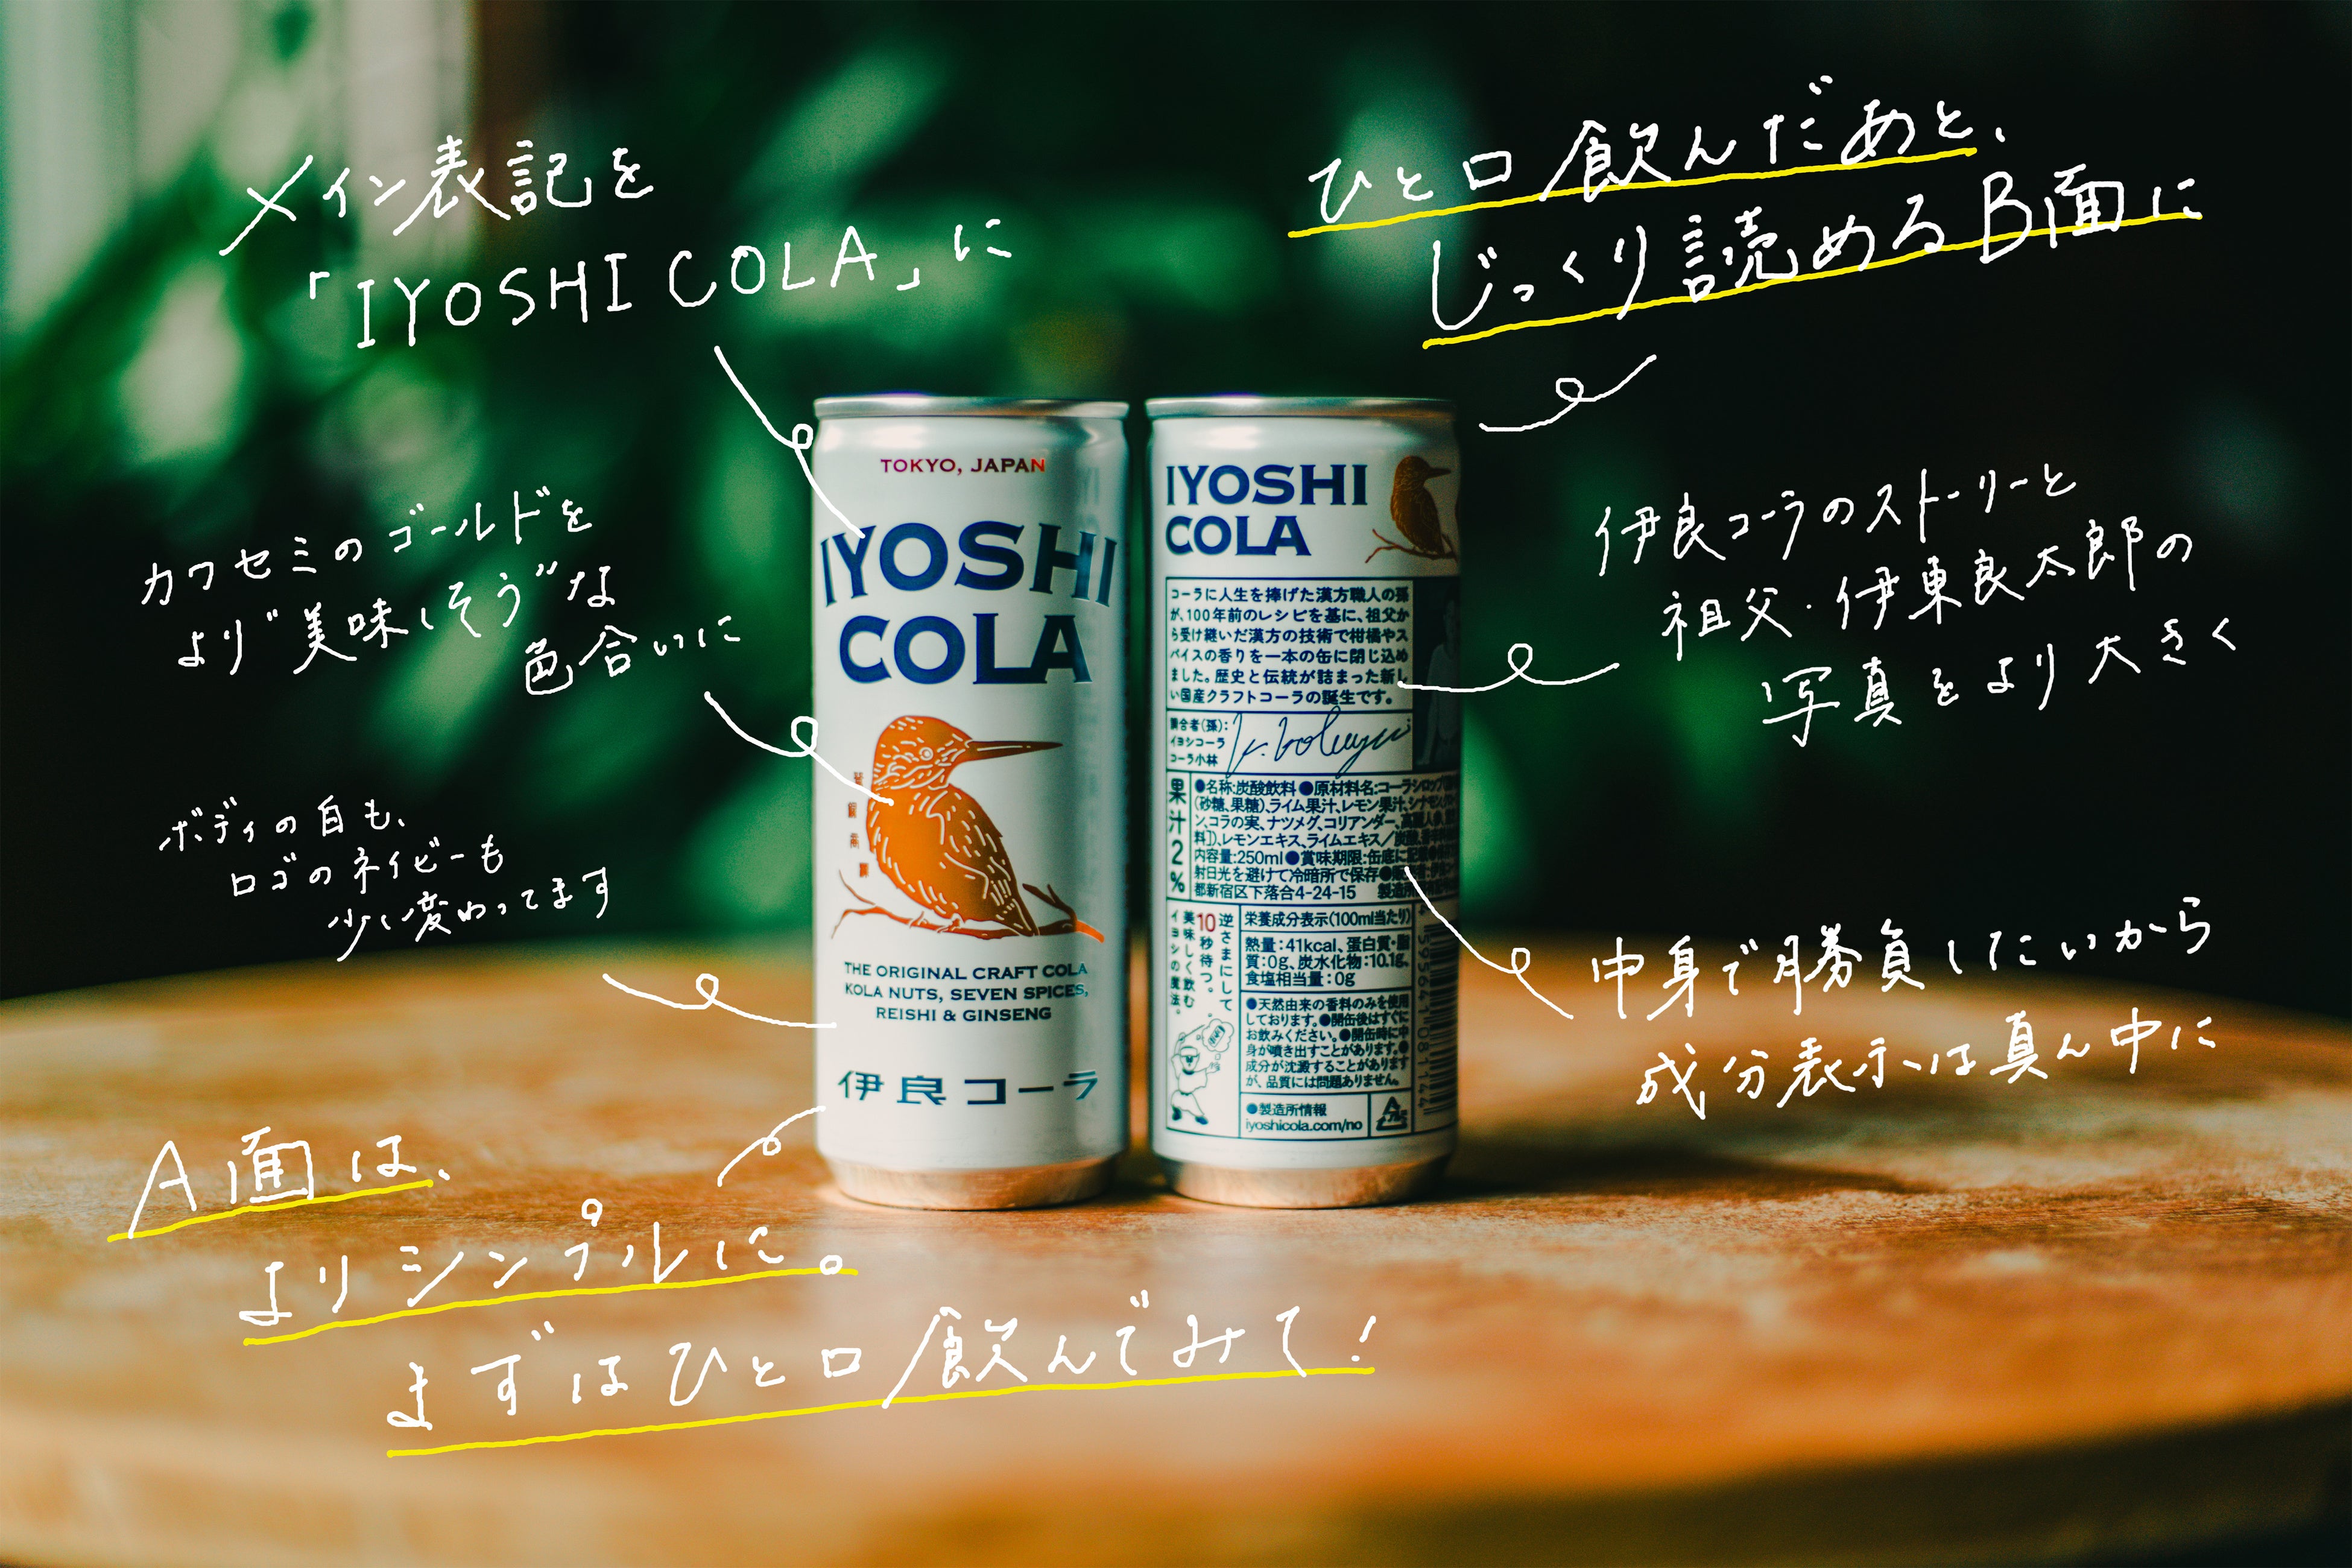 伊良コーラ「脱・イラコーラ」へ！イヨシコーラ缶タイプのデザインをリニューアル